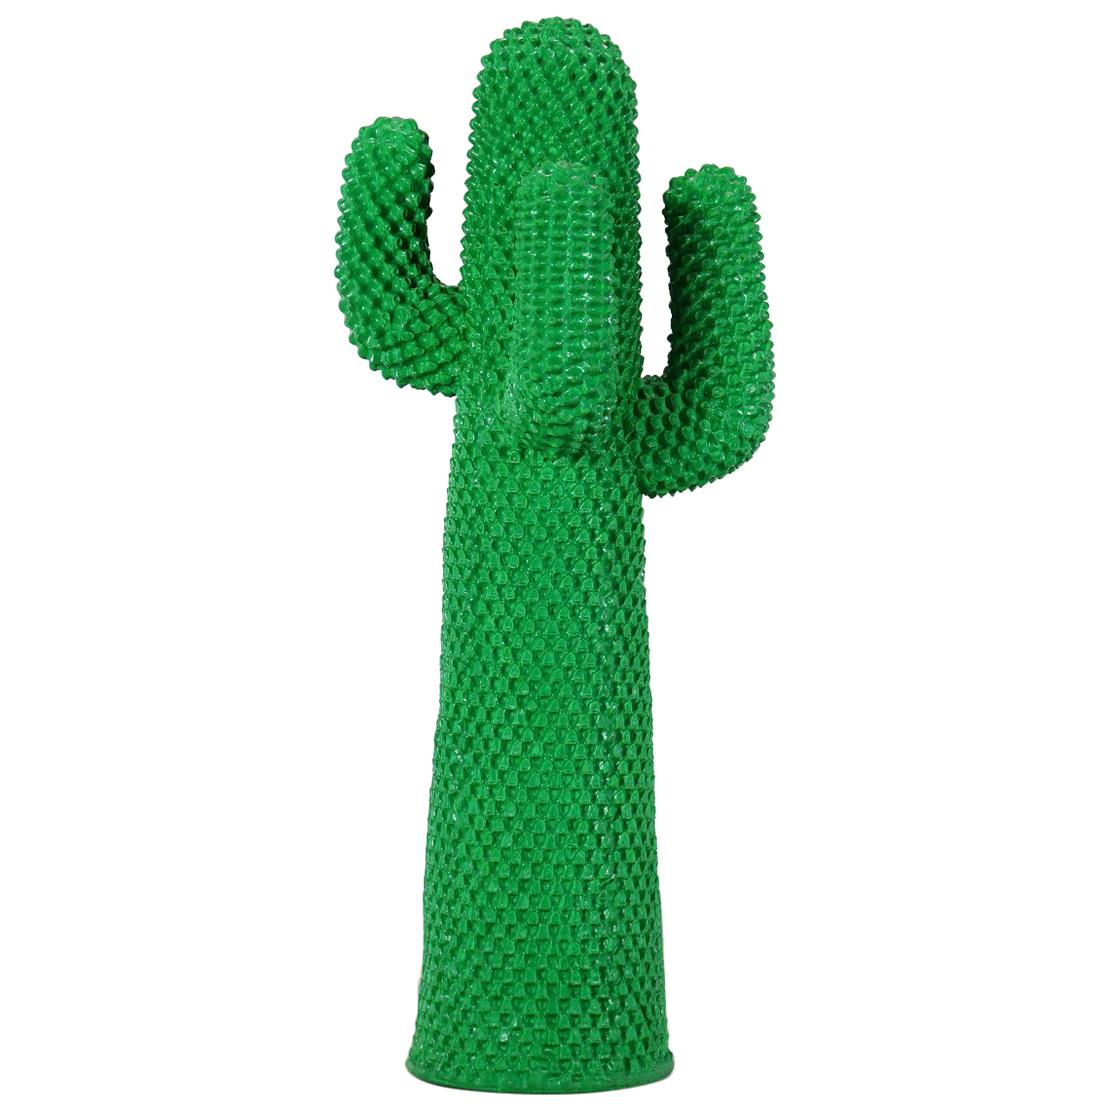 Gufram Cactus, 1972 by Guido Drocco and Franco Mello 640/2000 Original Green